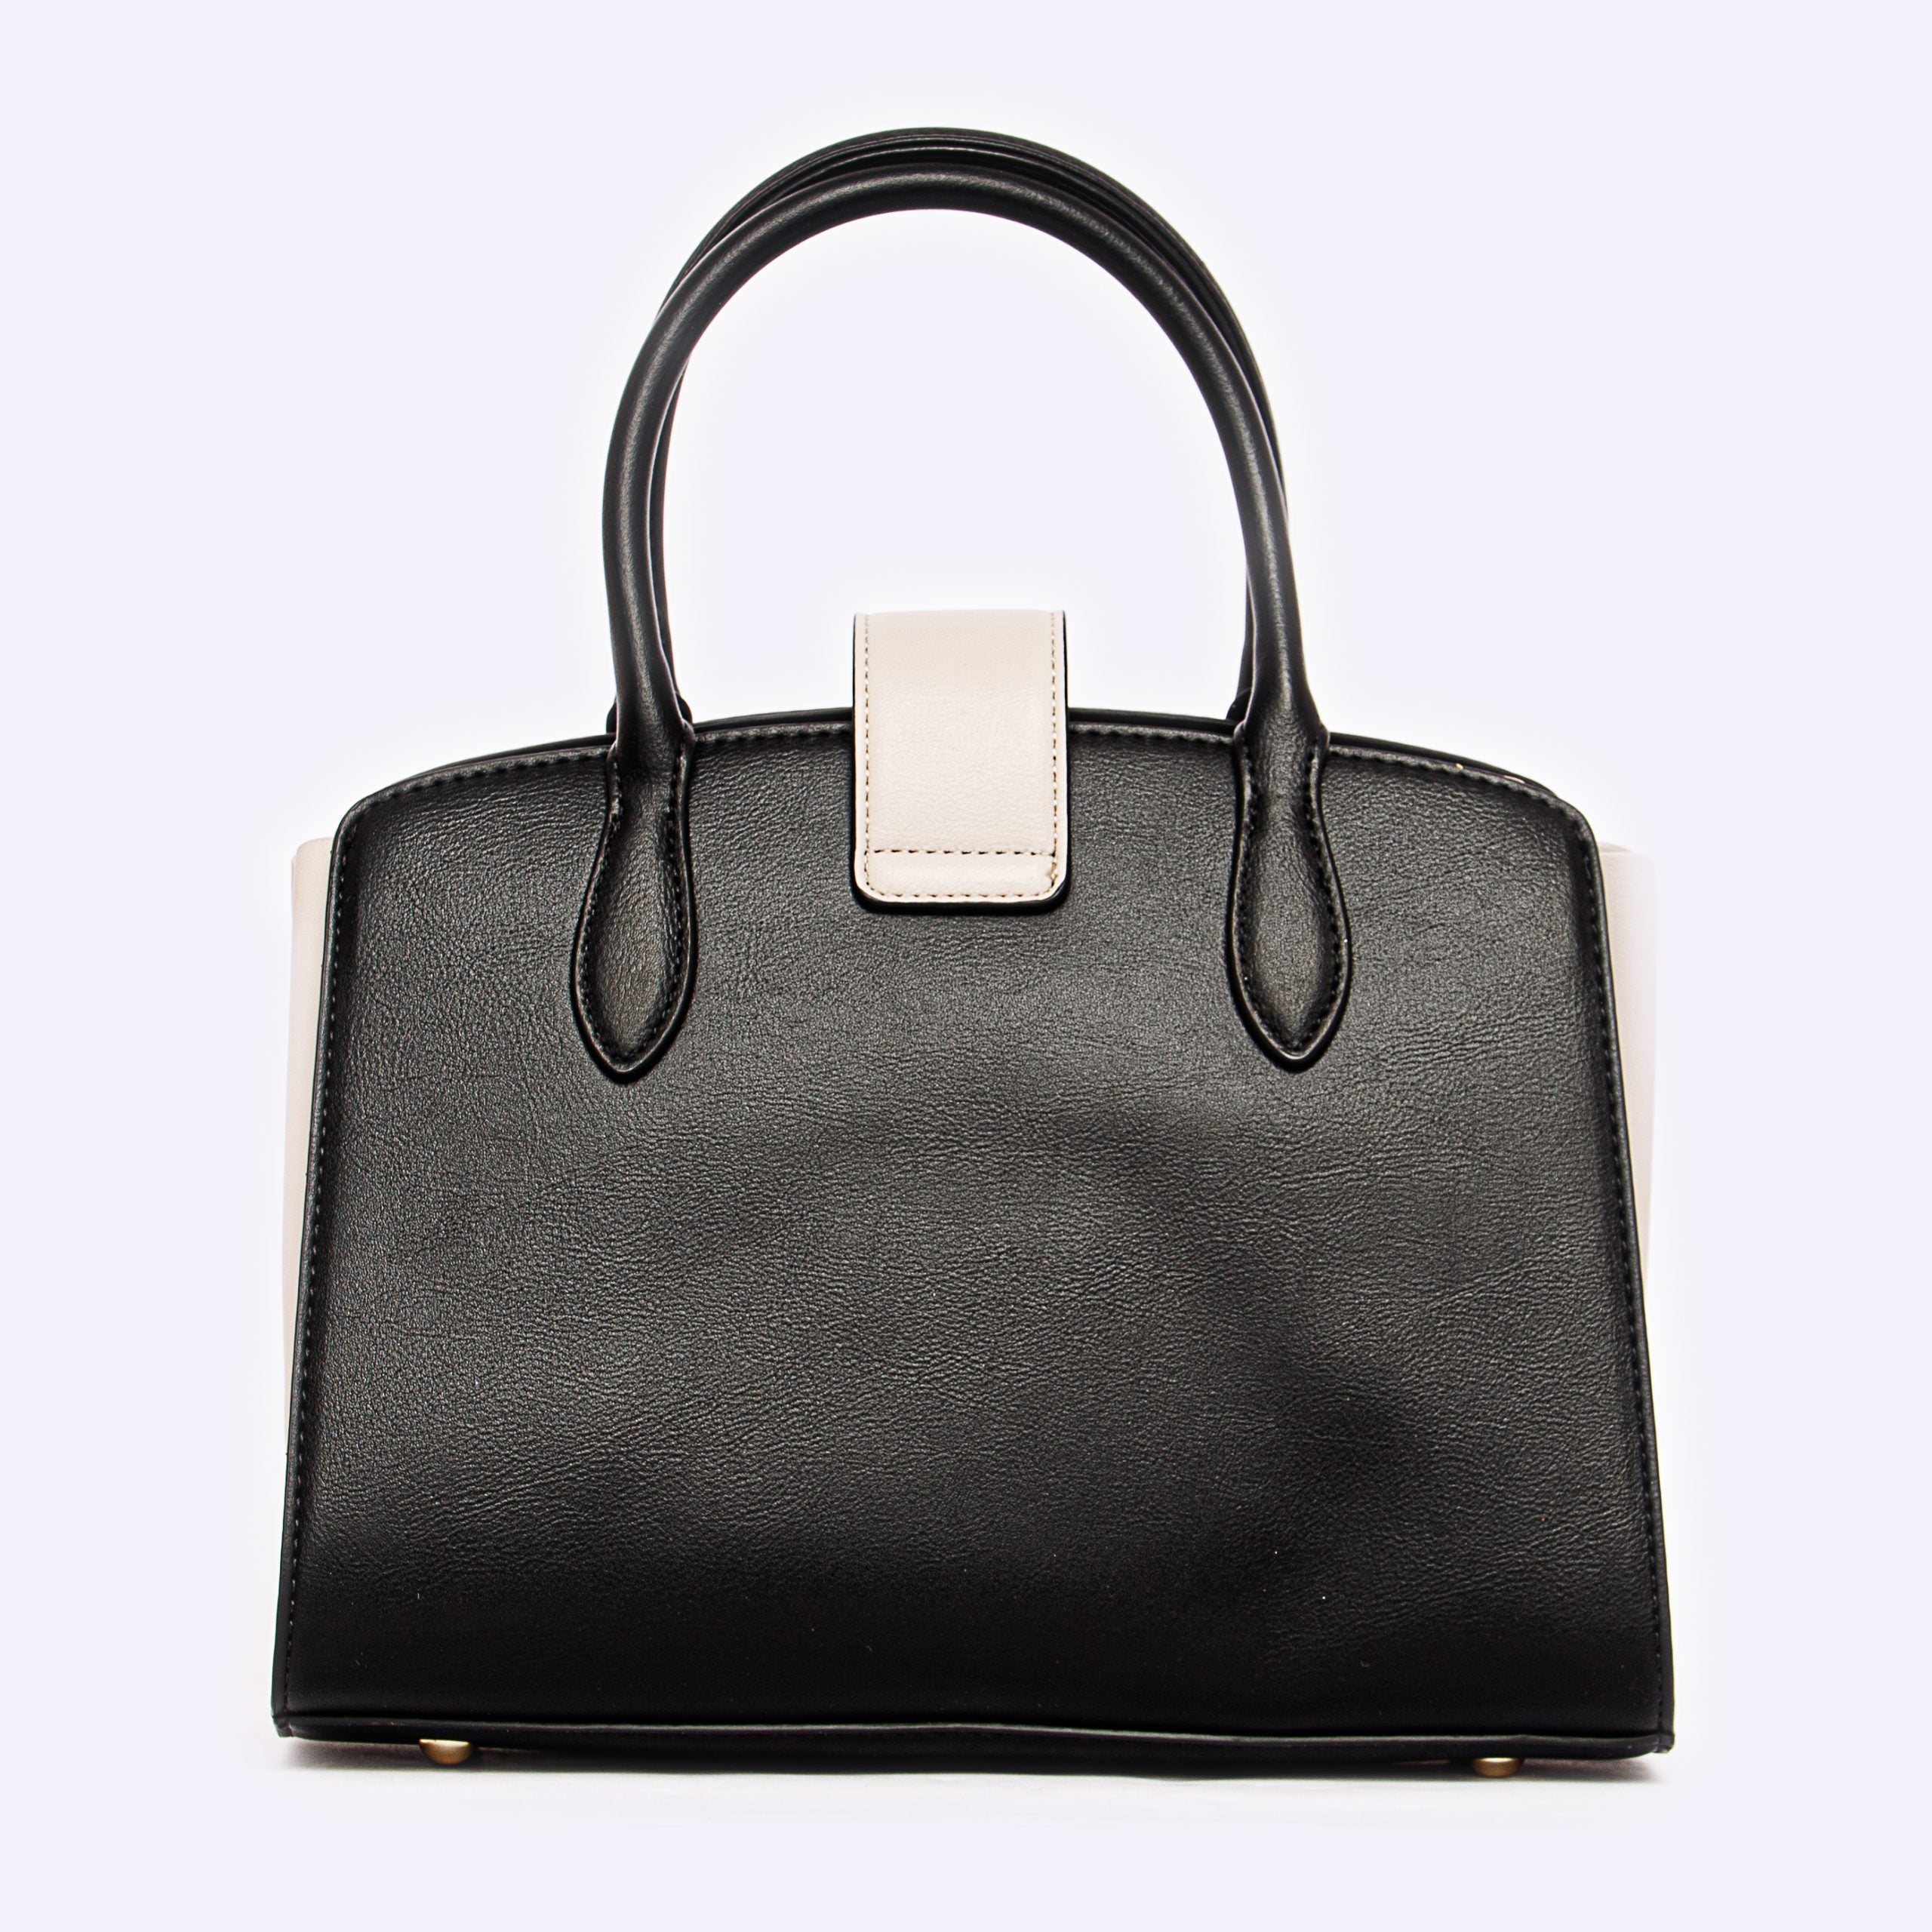 Shoeroom Woman Handbags B1435